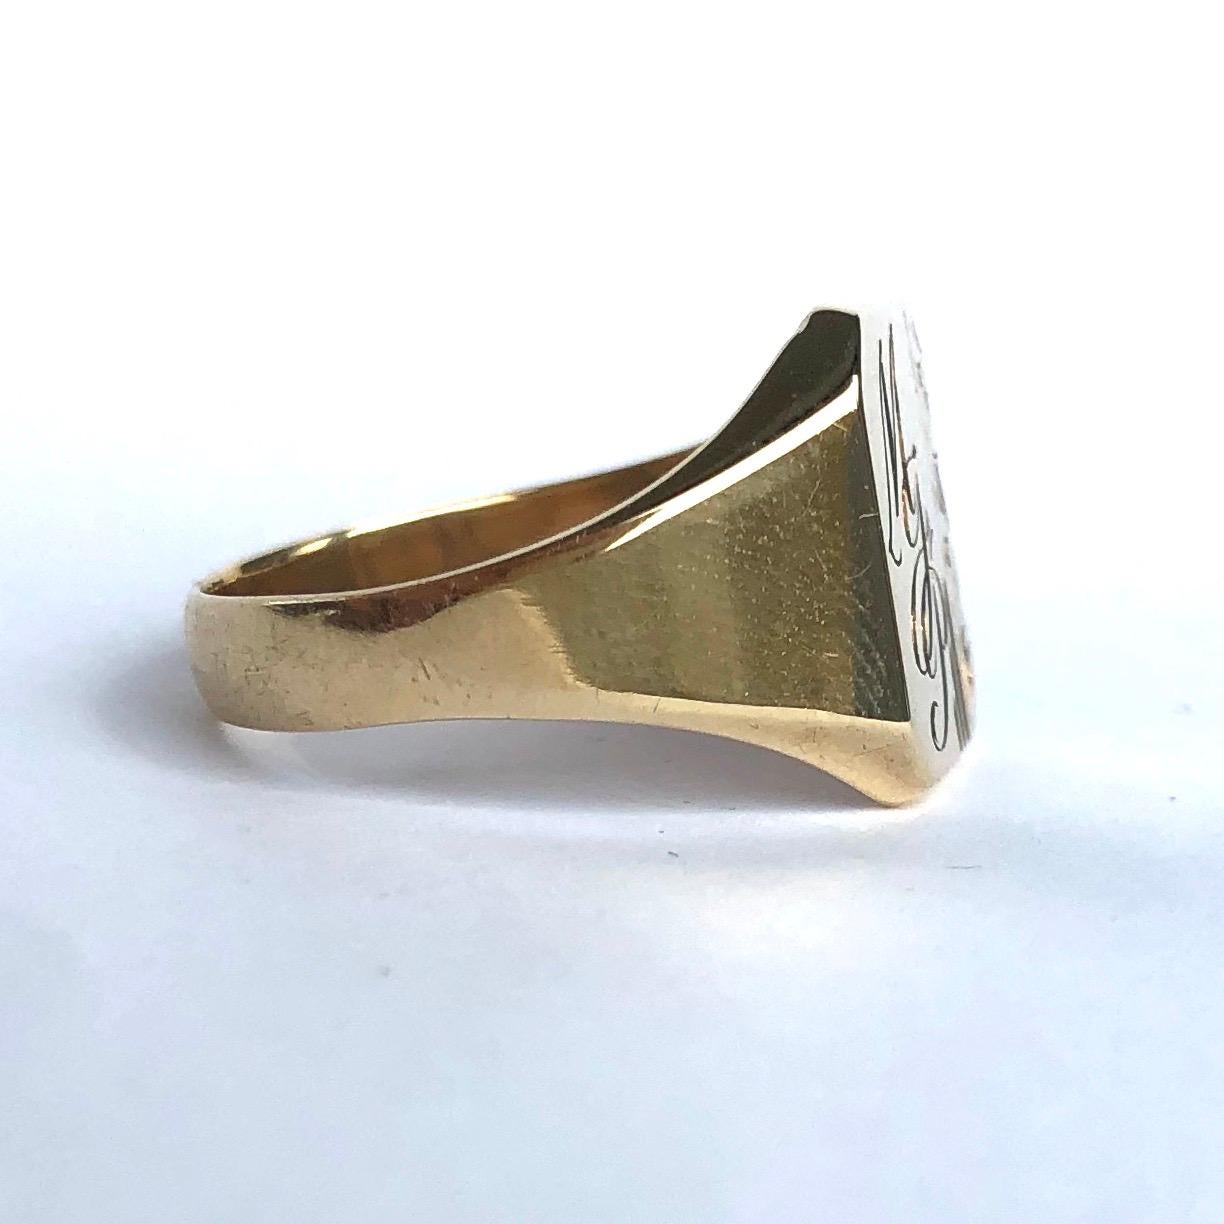 Dieser hübsche Ring aus 9-karätigem Gold hat die Initialen M.J.P. eingraviert, mit einigen subtilen Schnörkeln. 

Ringgröße: R 1/4 oder 8 3/4 
Abmessungen der Oberfläche: 13x11mm 

Gewicht: 3,13g